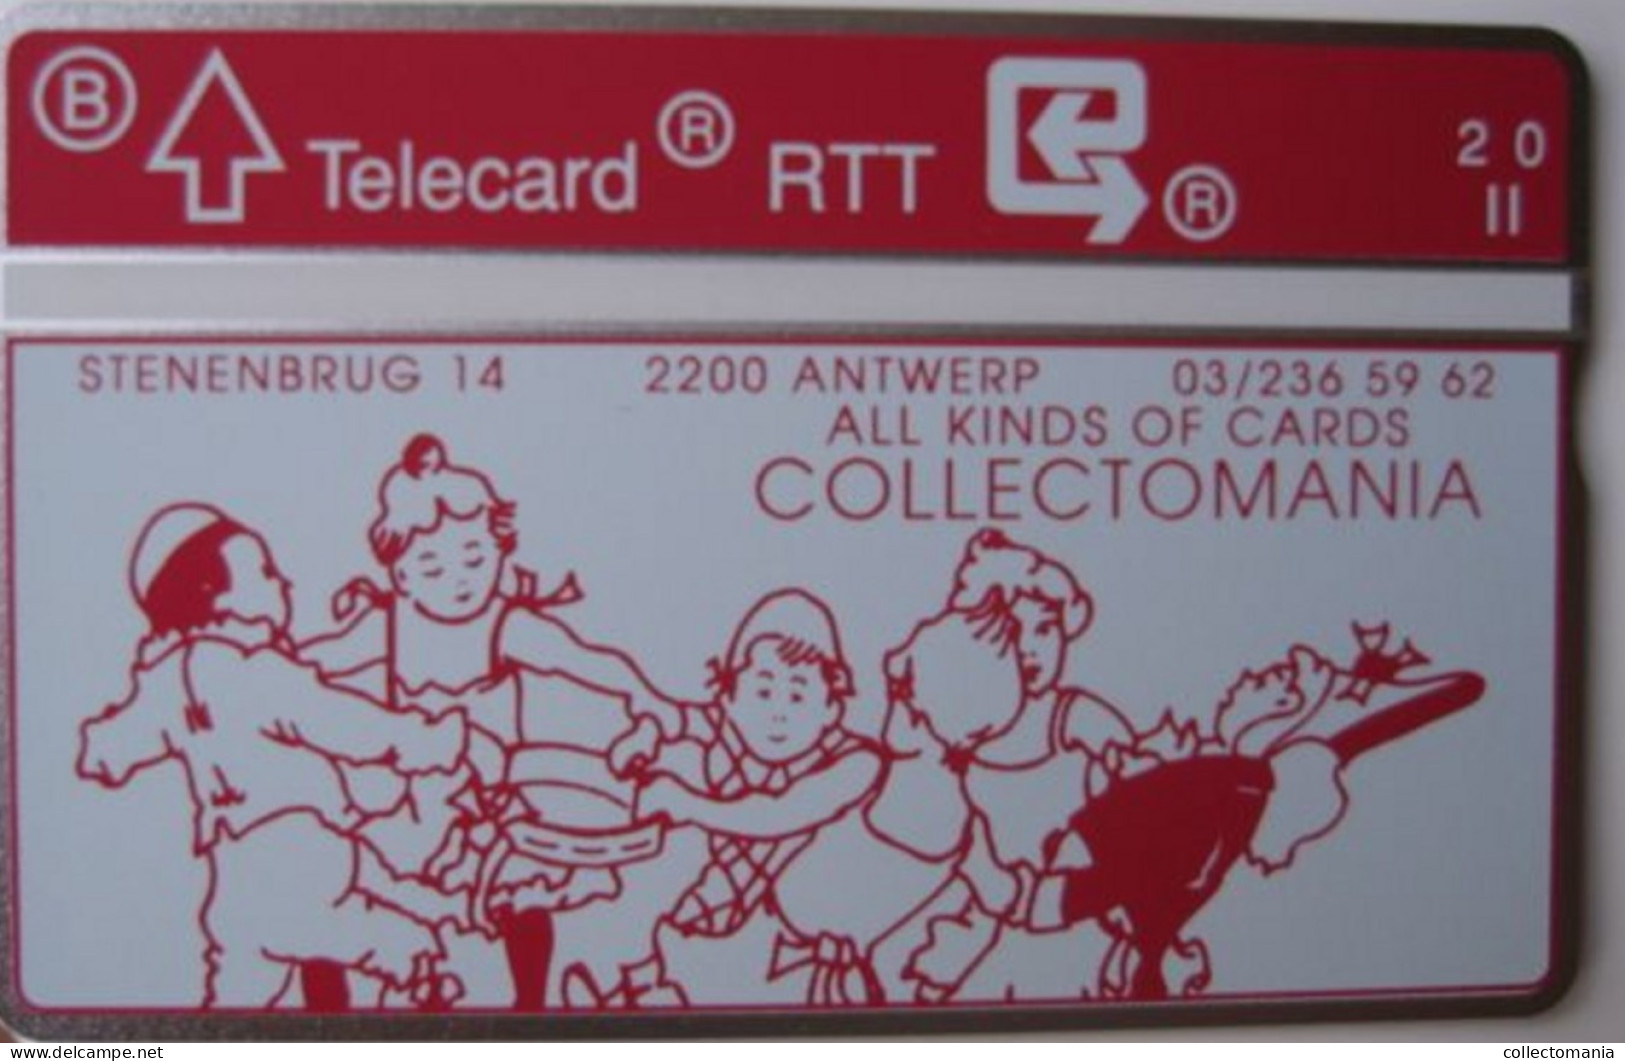 Onze Eerste Belgische Telecard Telefoonkaart Van 1990  Collectomania  R.T.T.  BELGACOM TELEPHONE NIET Gebruikt - Without Chip